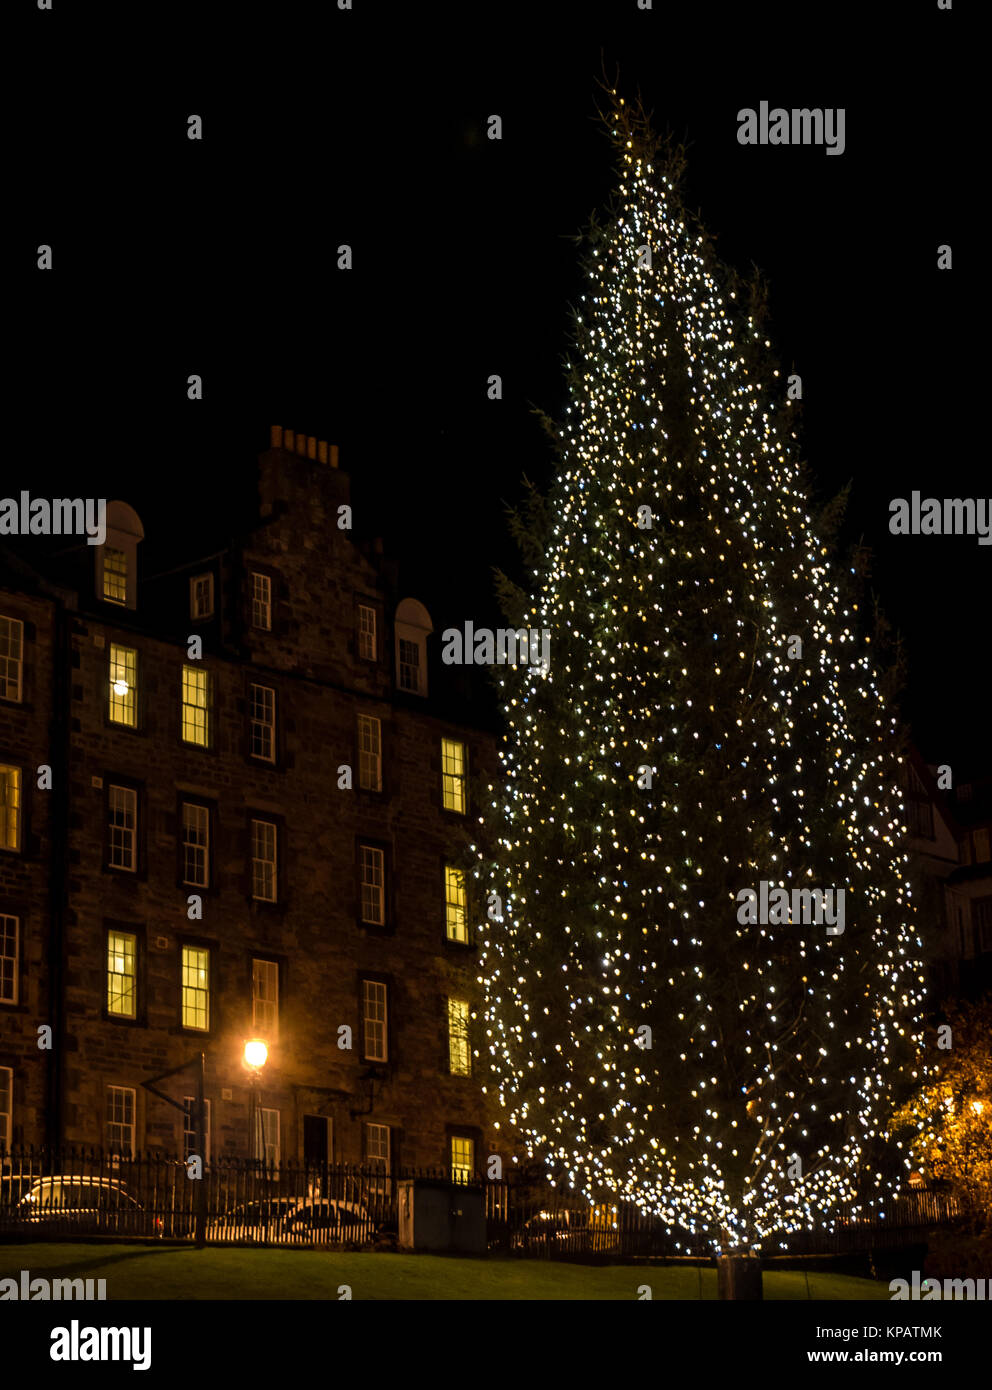 El montículo, Edimburgo, Escocia, Reino Unido, 14 de diciembre de 2017. Un gran árbol de Navidad abeto el abeto de Noruega, don de consejo del condado de Hordaland, Noruega, se ilumina la oscuridad en el montículo. El árbol es un donativo anual para la ciudad de Edimburgo Foto de stock